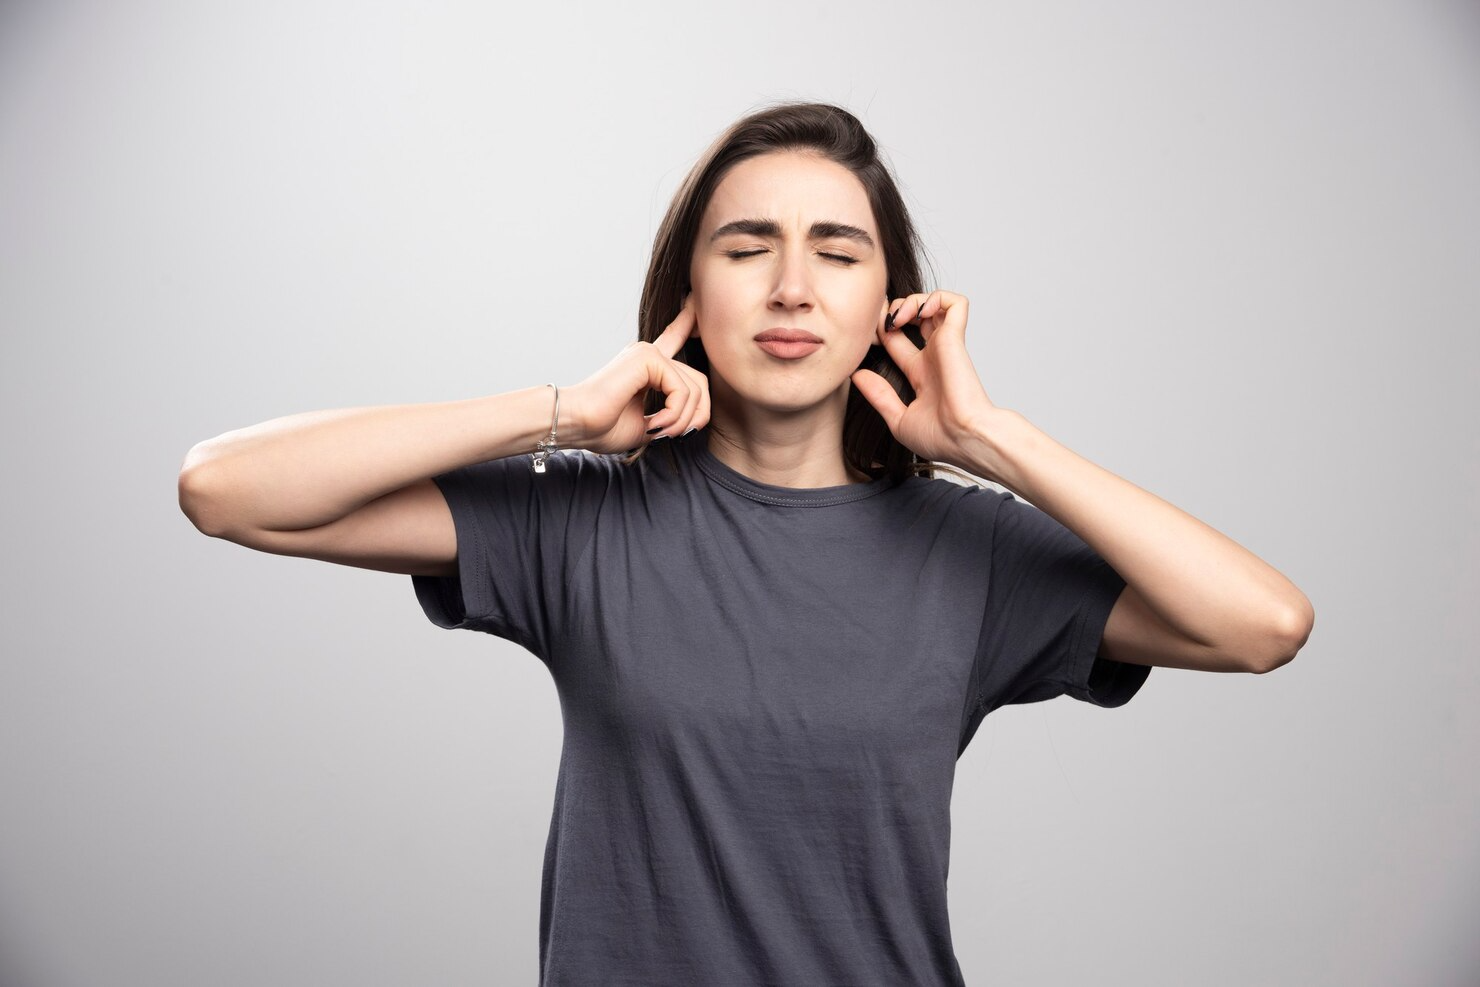 Can hearing aids cause headaches?